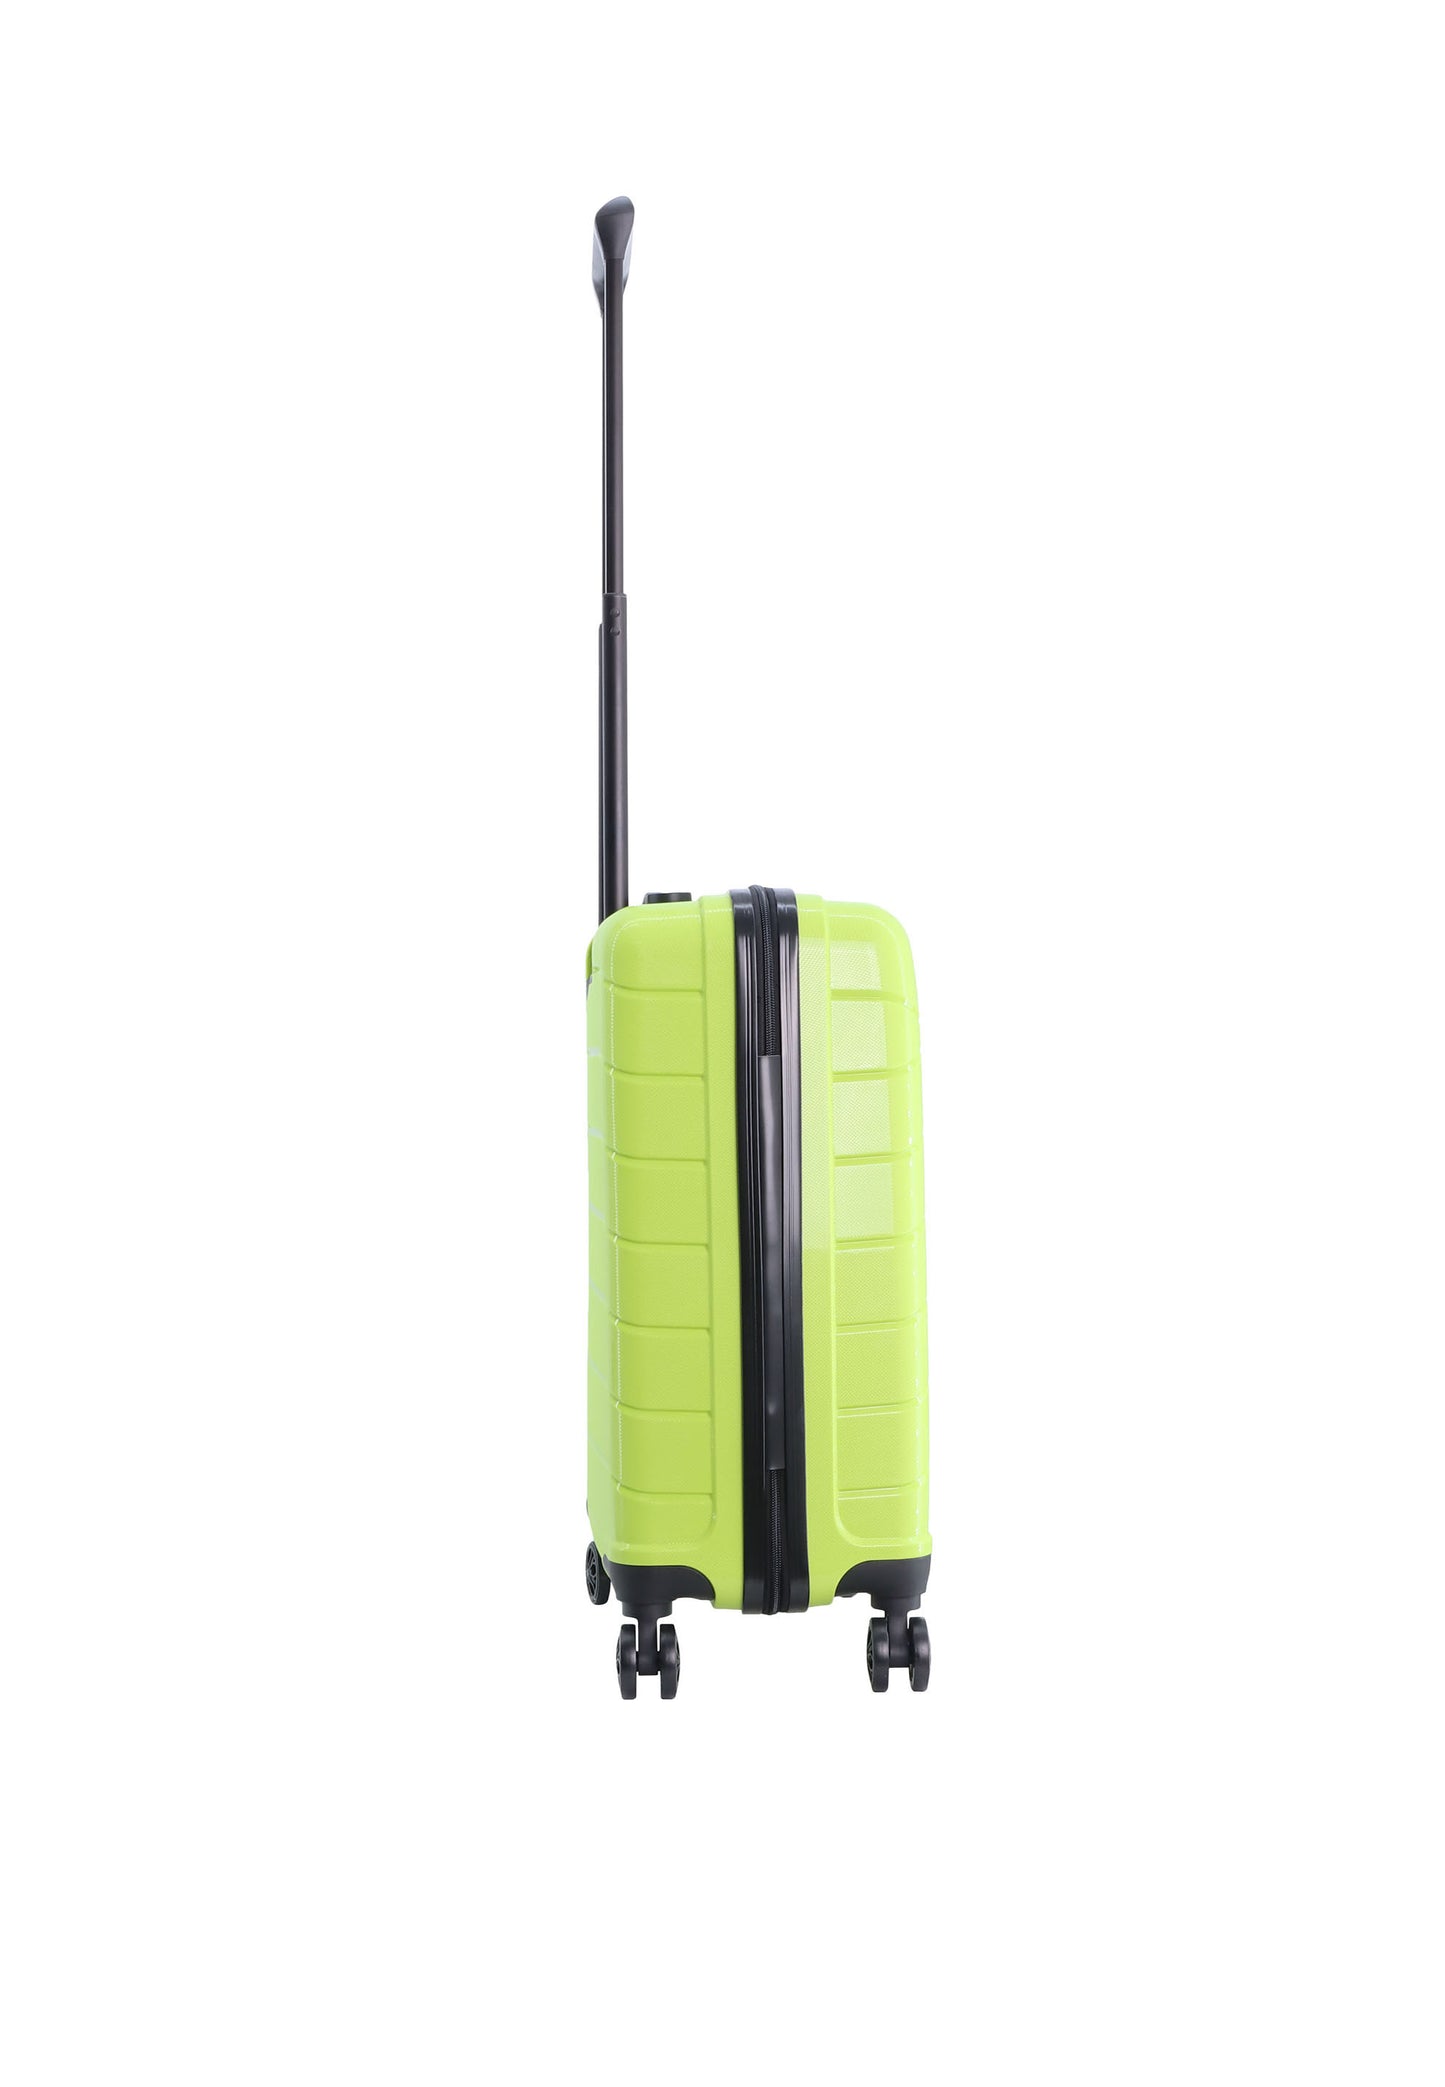 Discovery Skyward Bagage à main Valise rigide / Trolley / Valise de voyage - 55 cm (Petit) - Citron vert